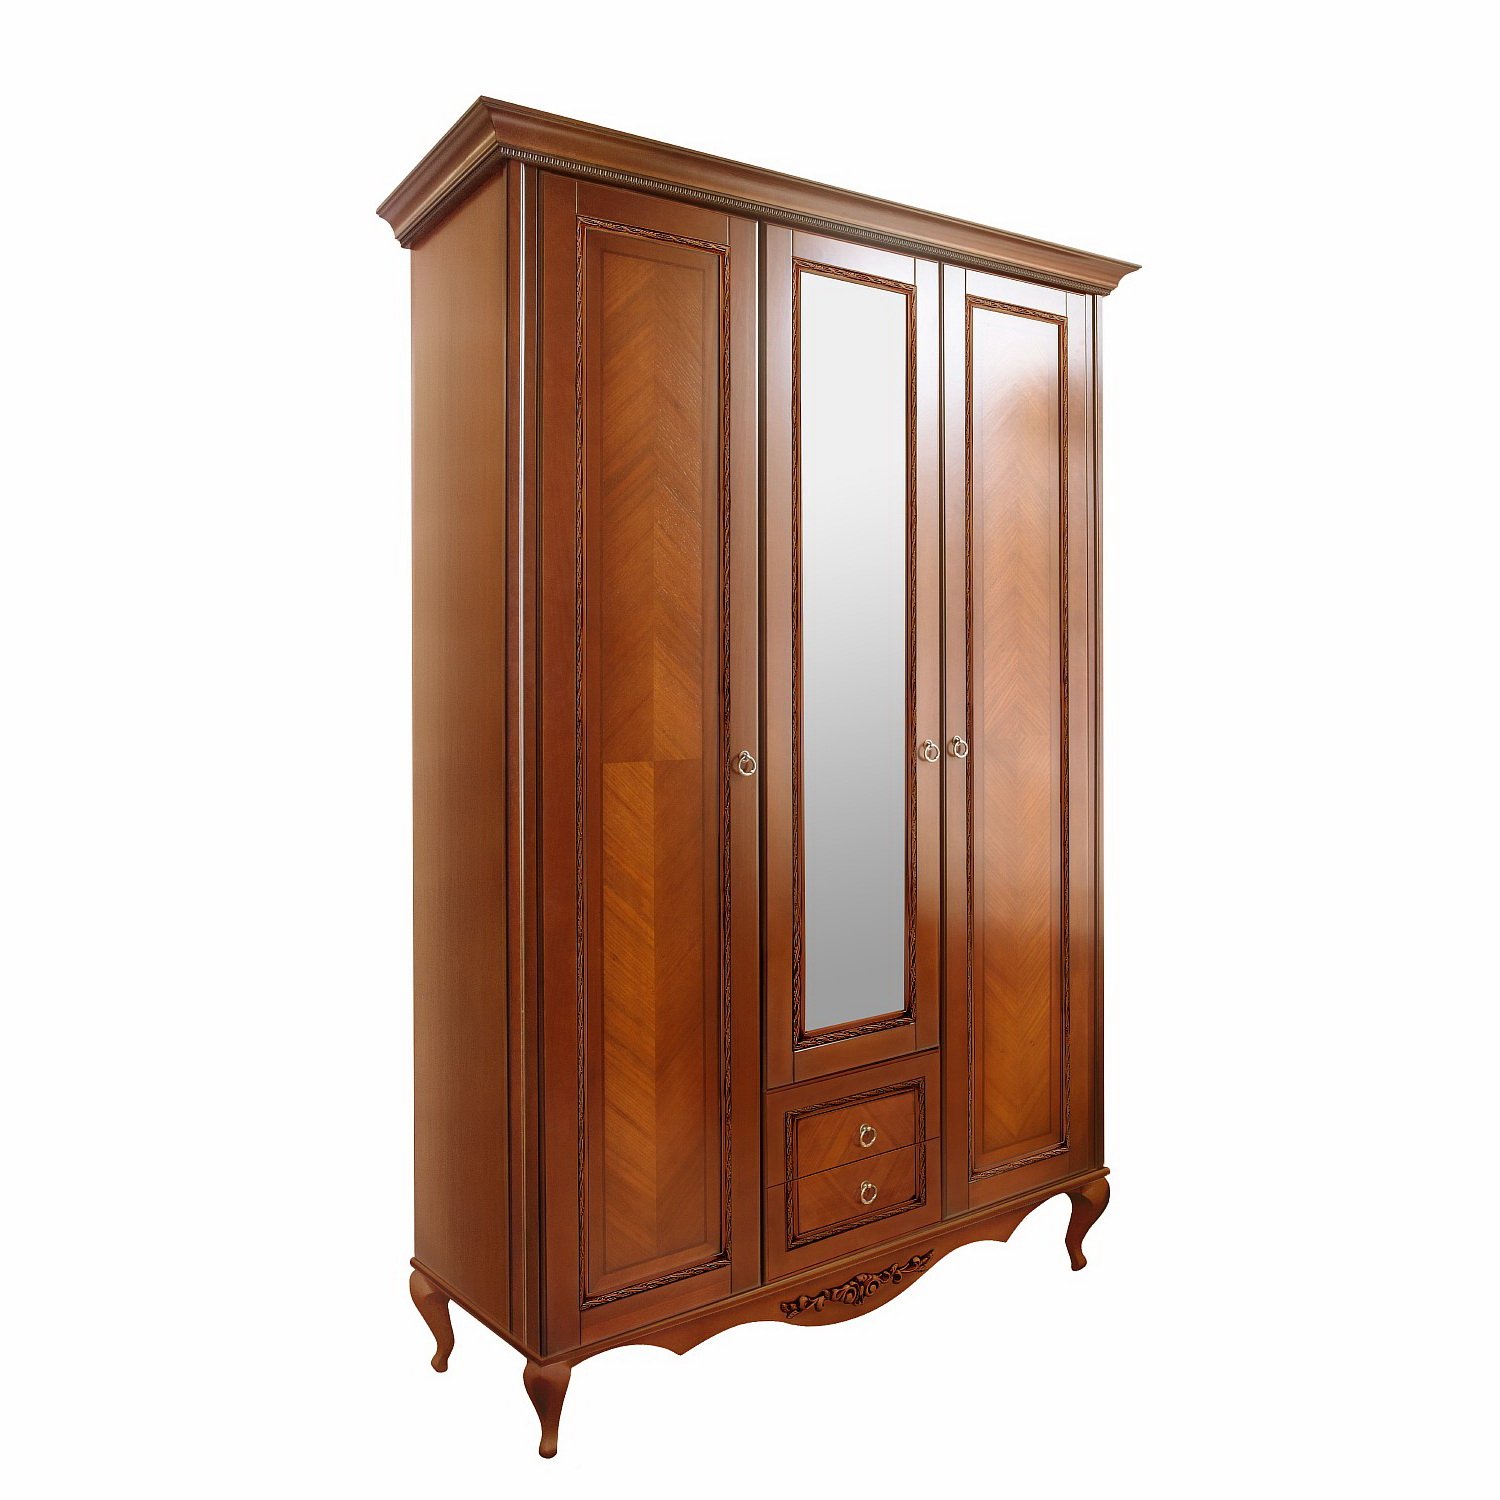 Шкаф платяной Timber Неаполь, 3-х дверный с зеркалом 159x65x227 см, цвет: янтарь (Т-523/Y)Т-523